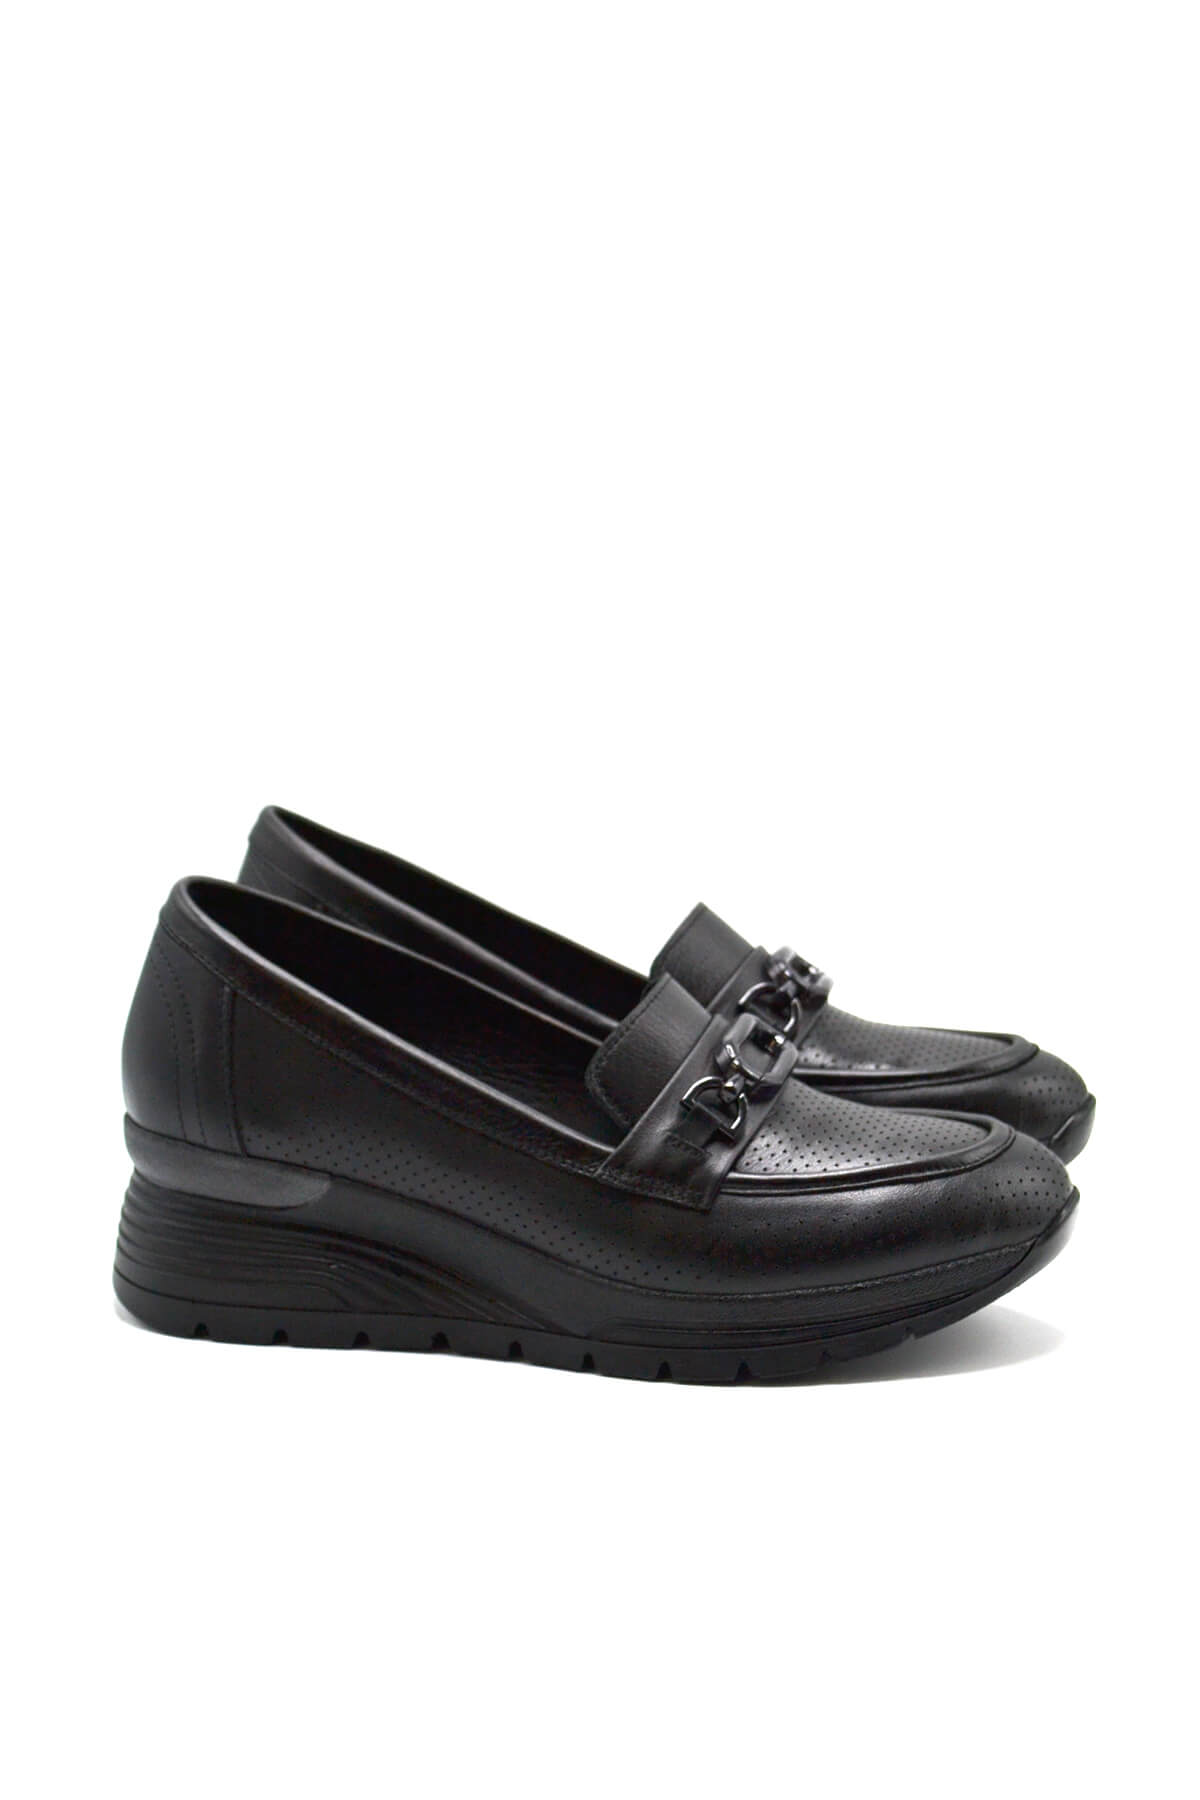 Kadın Airflow Deri Ayakkabı Siyah 2313001Y